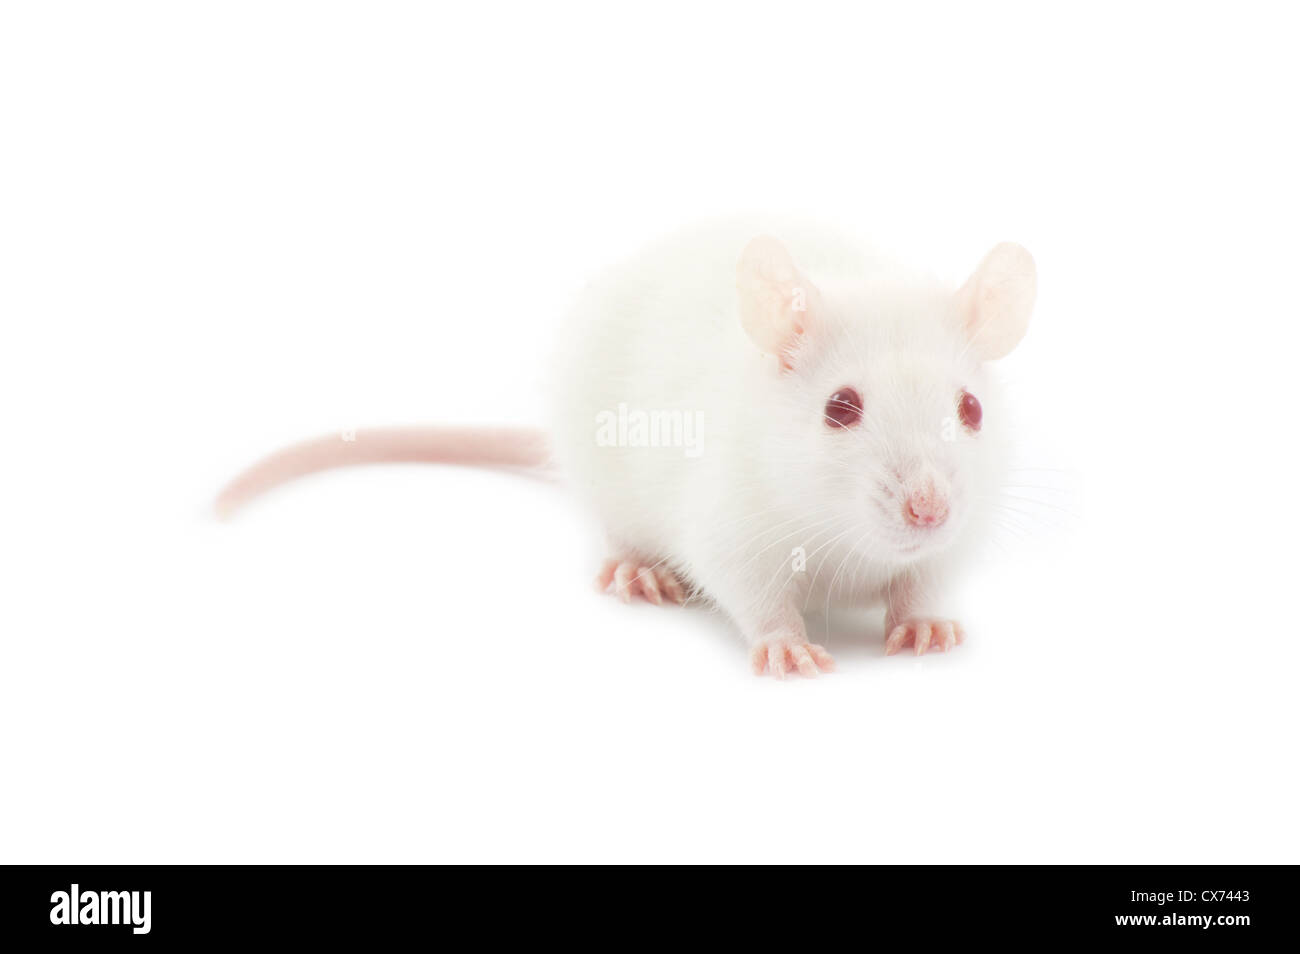 white rat isolated on white background Stock Photo